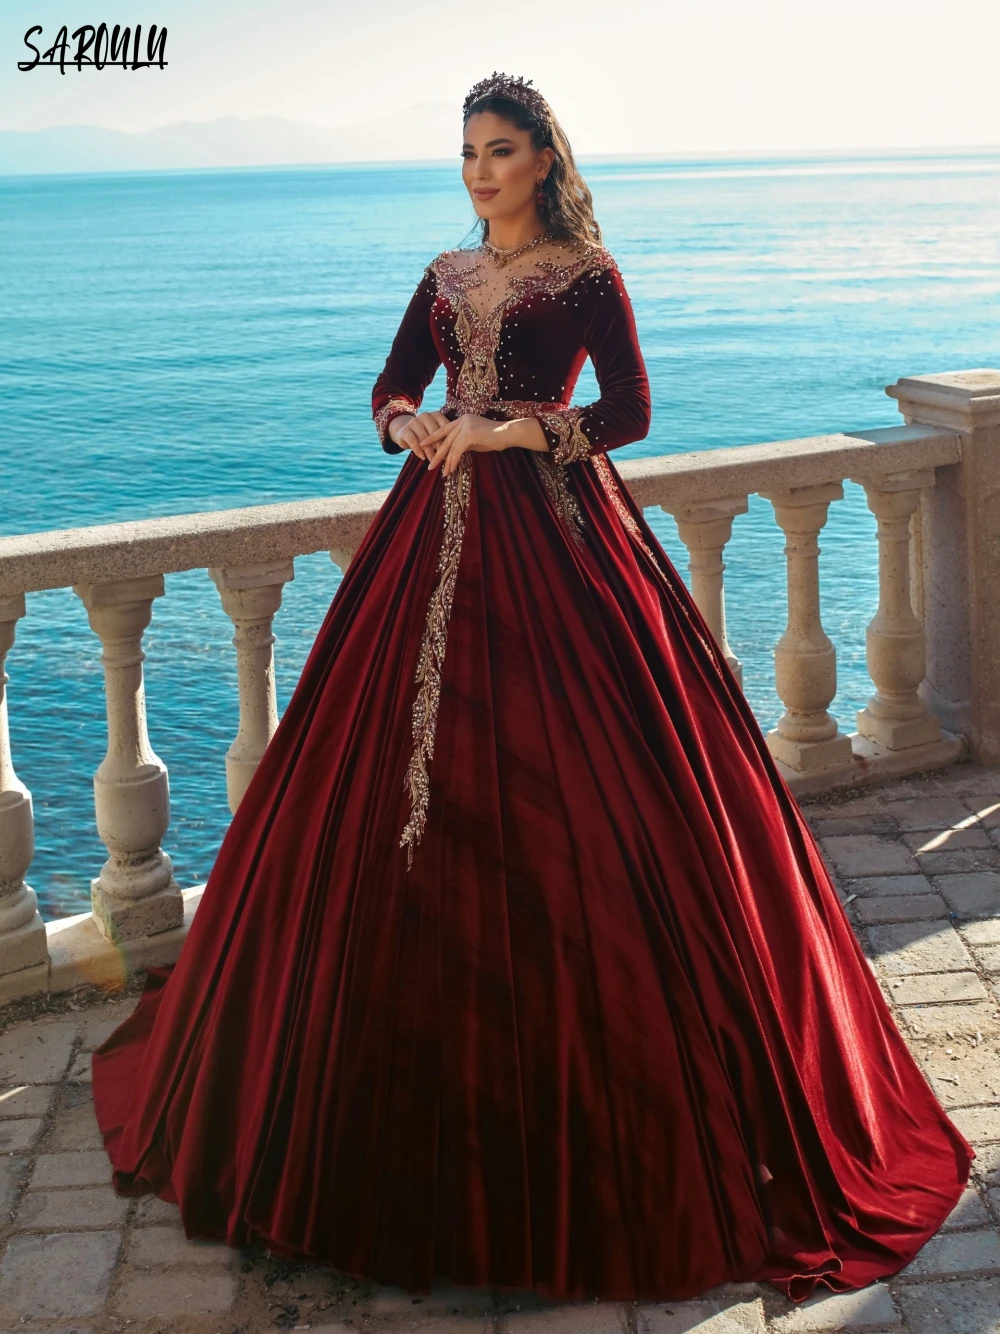 28 Dubai gown ideas | gowns, gowns dresses, fancy dresses